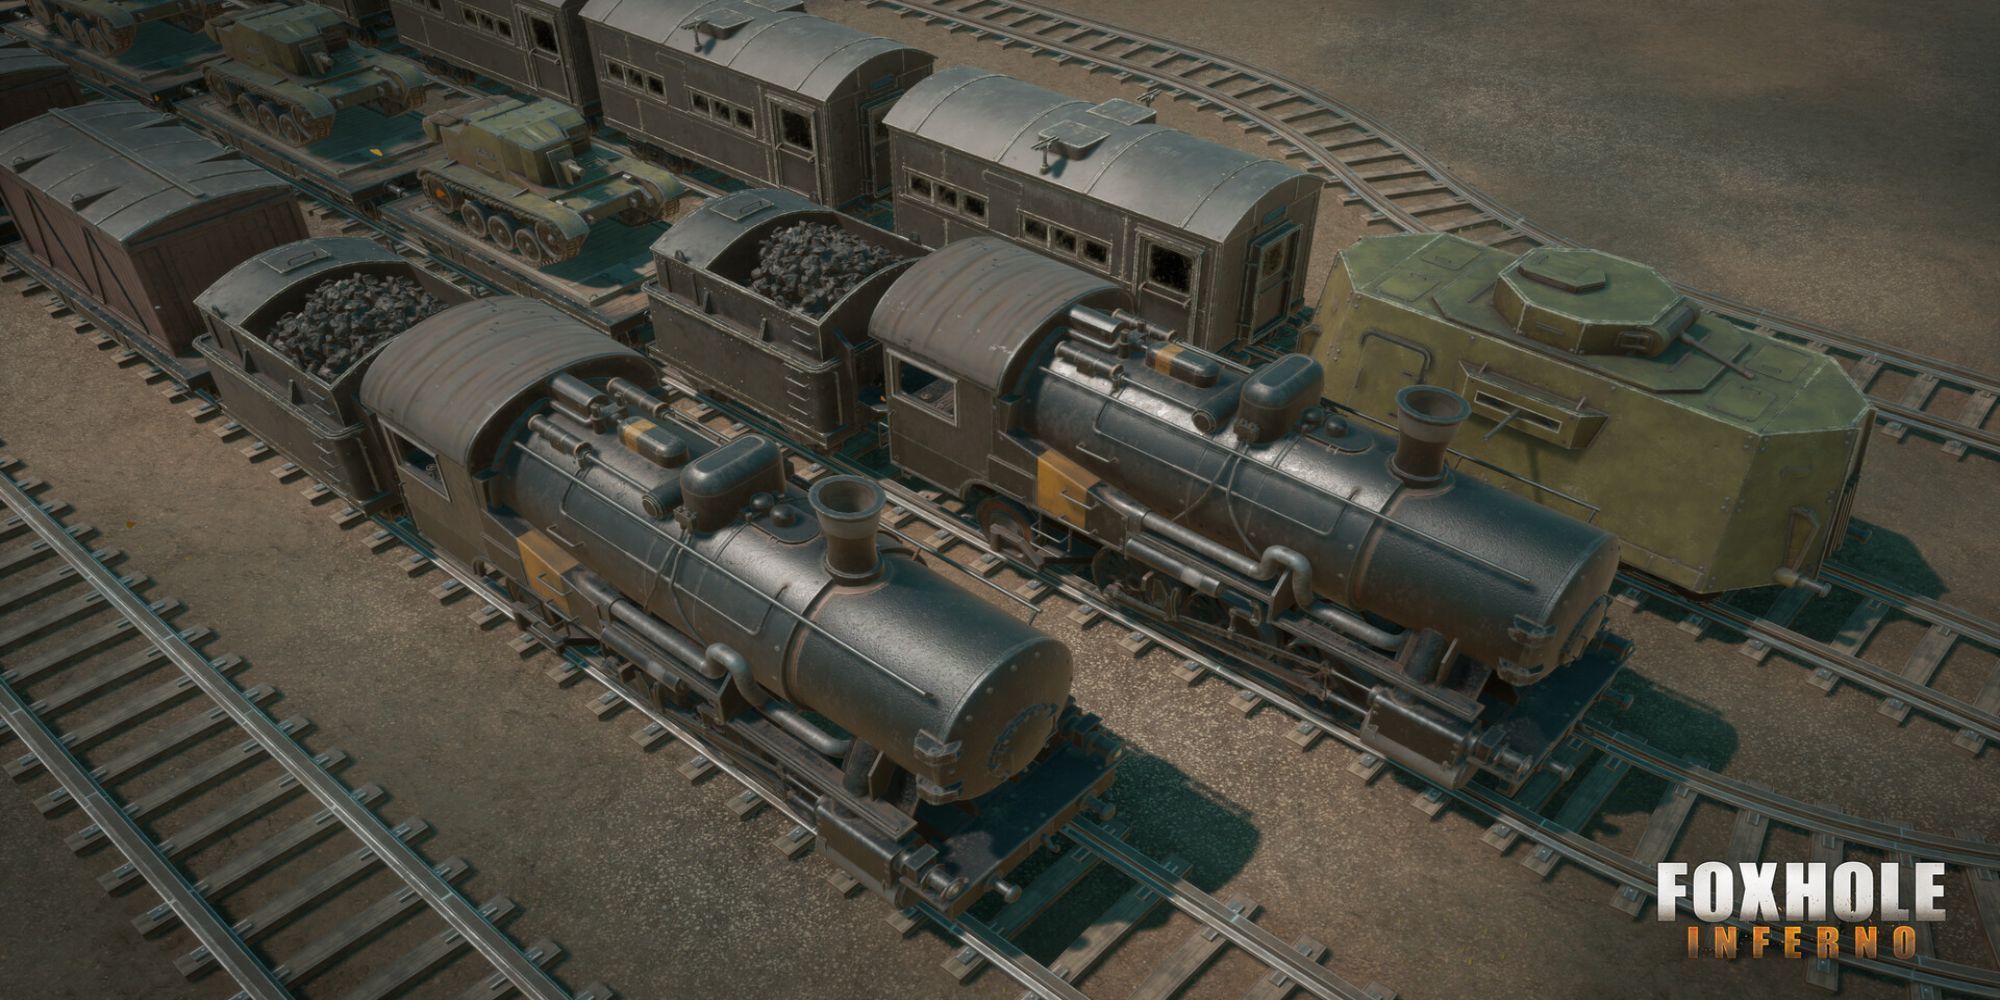 Foxhole - Trains